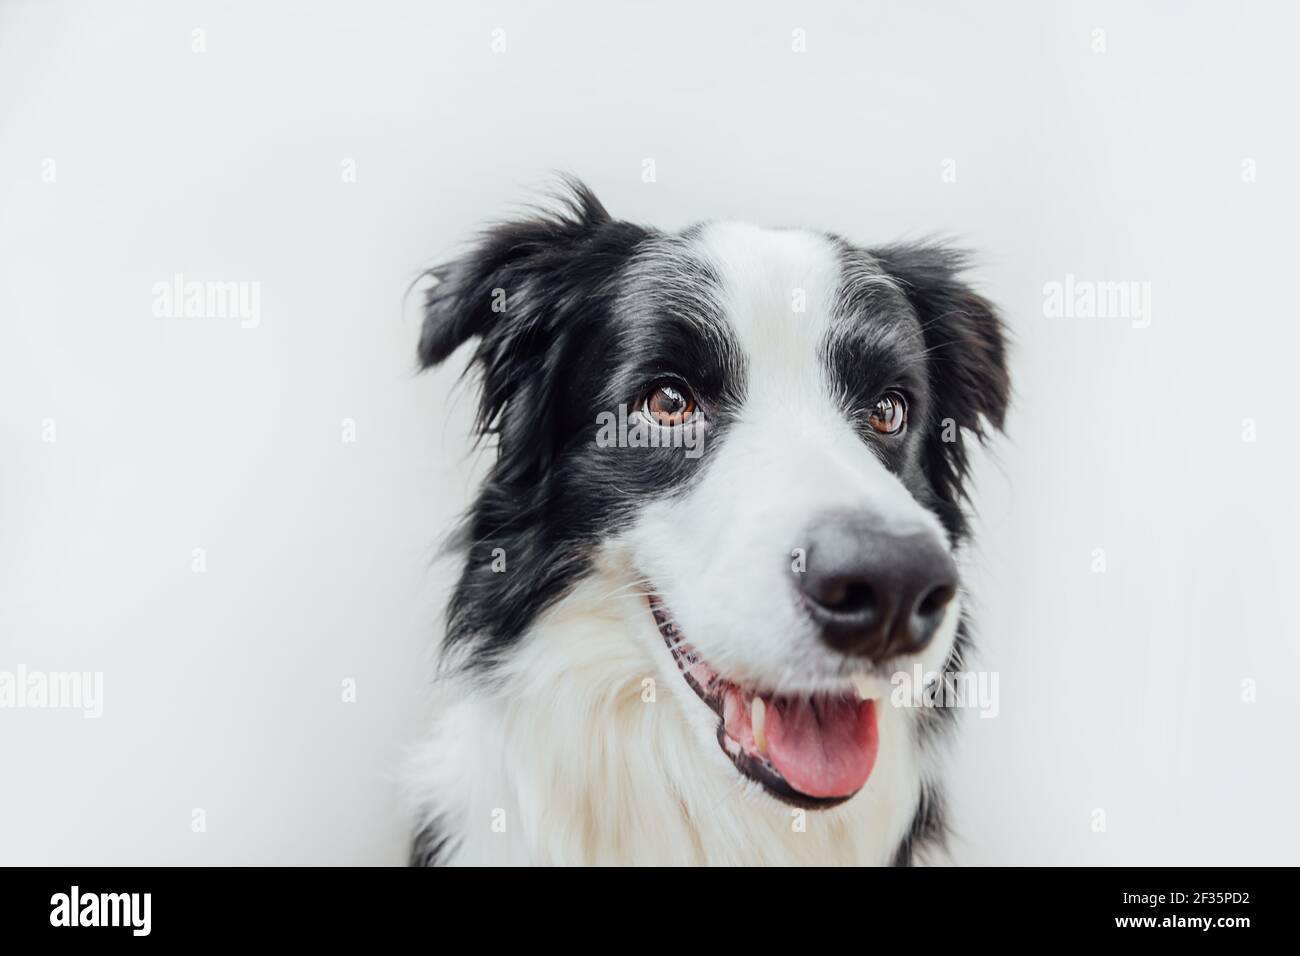 Lustige Studio Porträt von niedlichen lächelnden Welpen Hund Grenze Collie isoliert auf weißem Hintergrund. Neues schönes Mitglied der Familie, kleiner Hund, der guckt und wartet Stockfoto